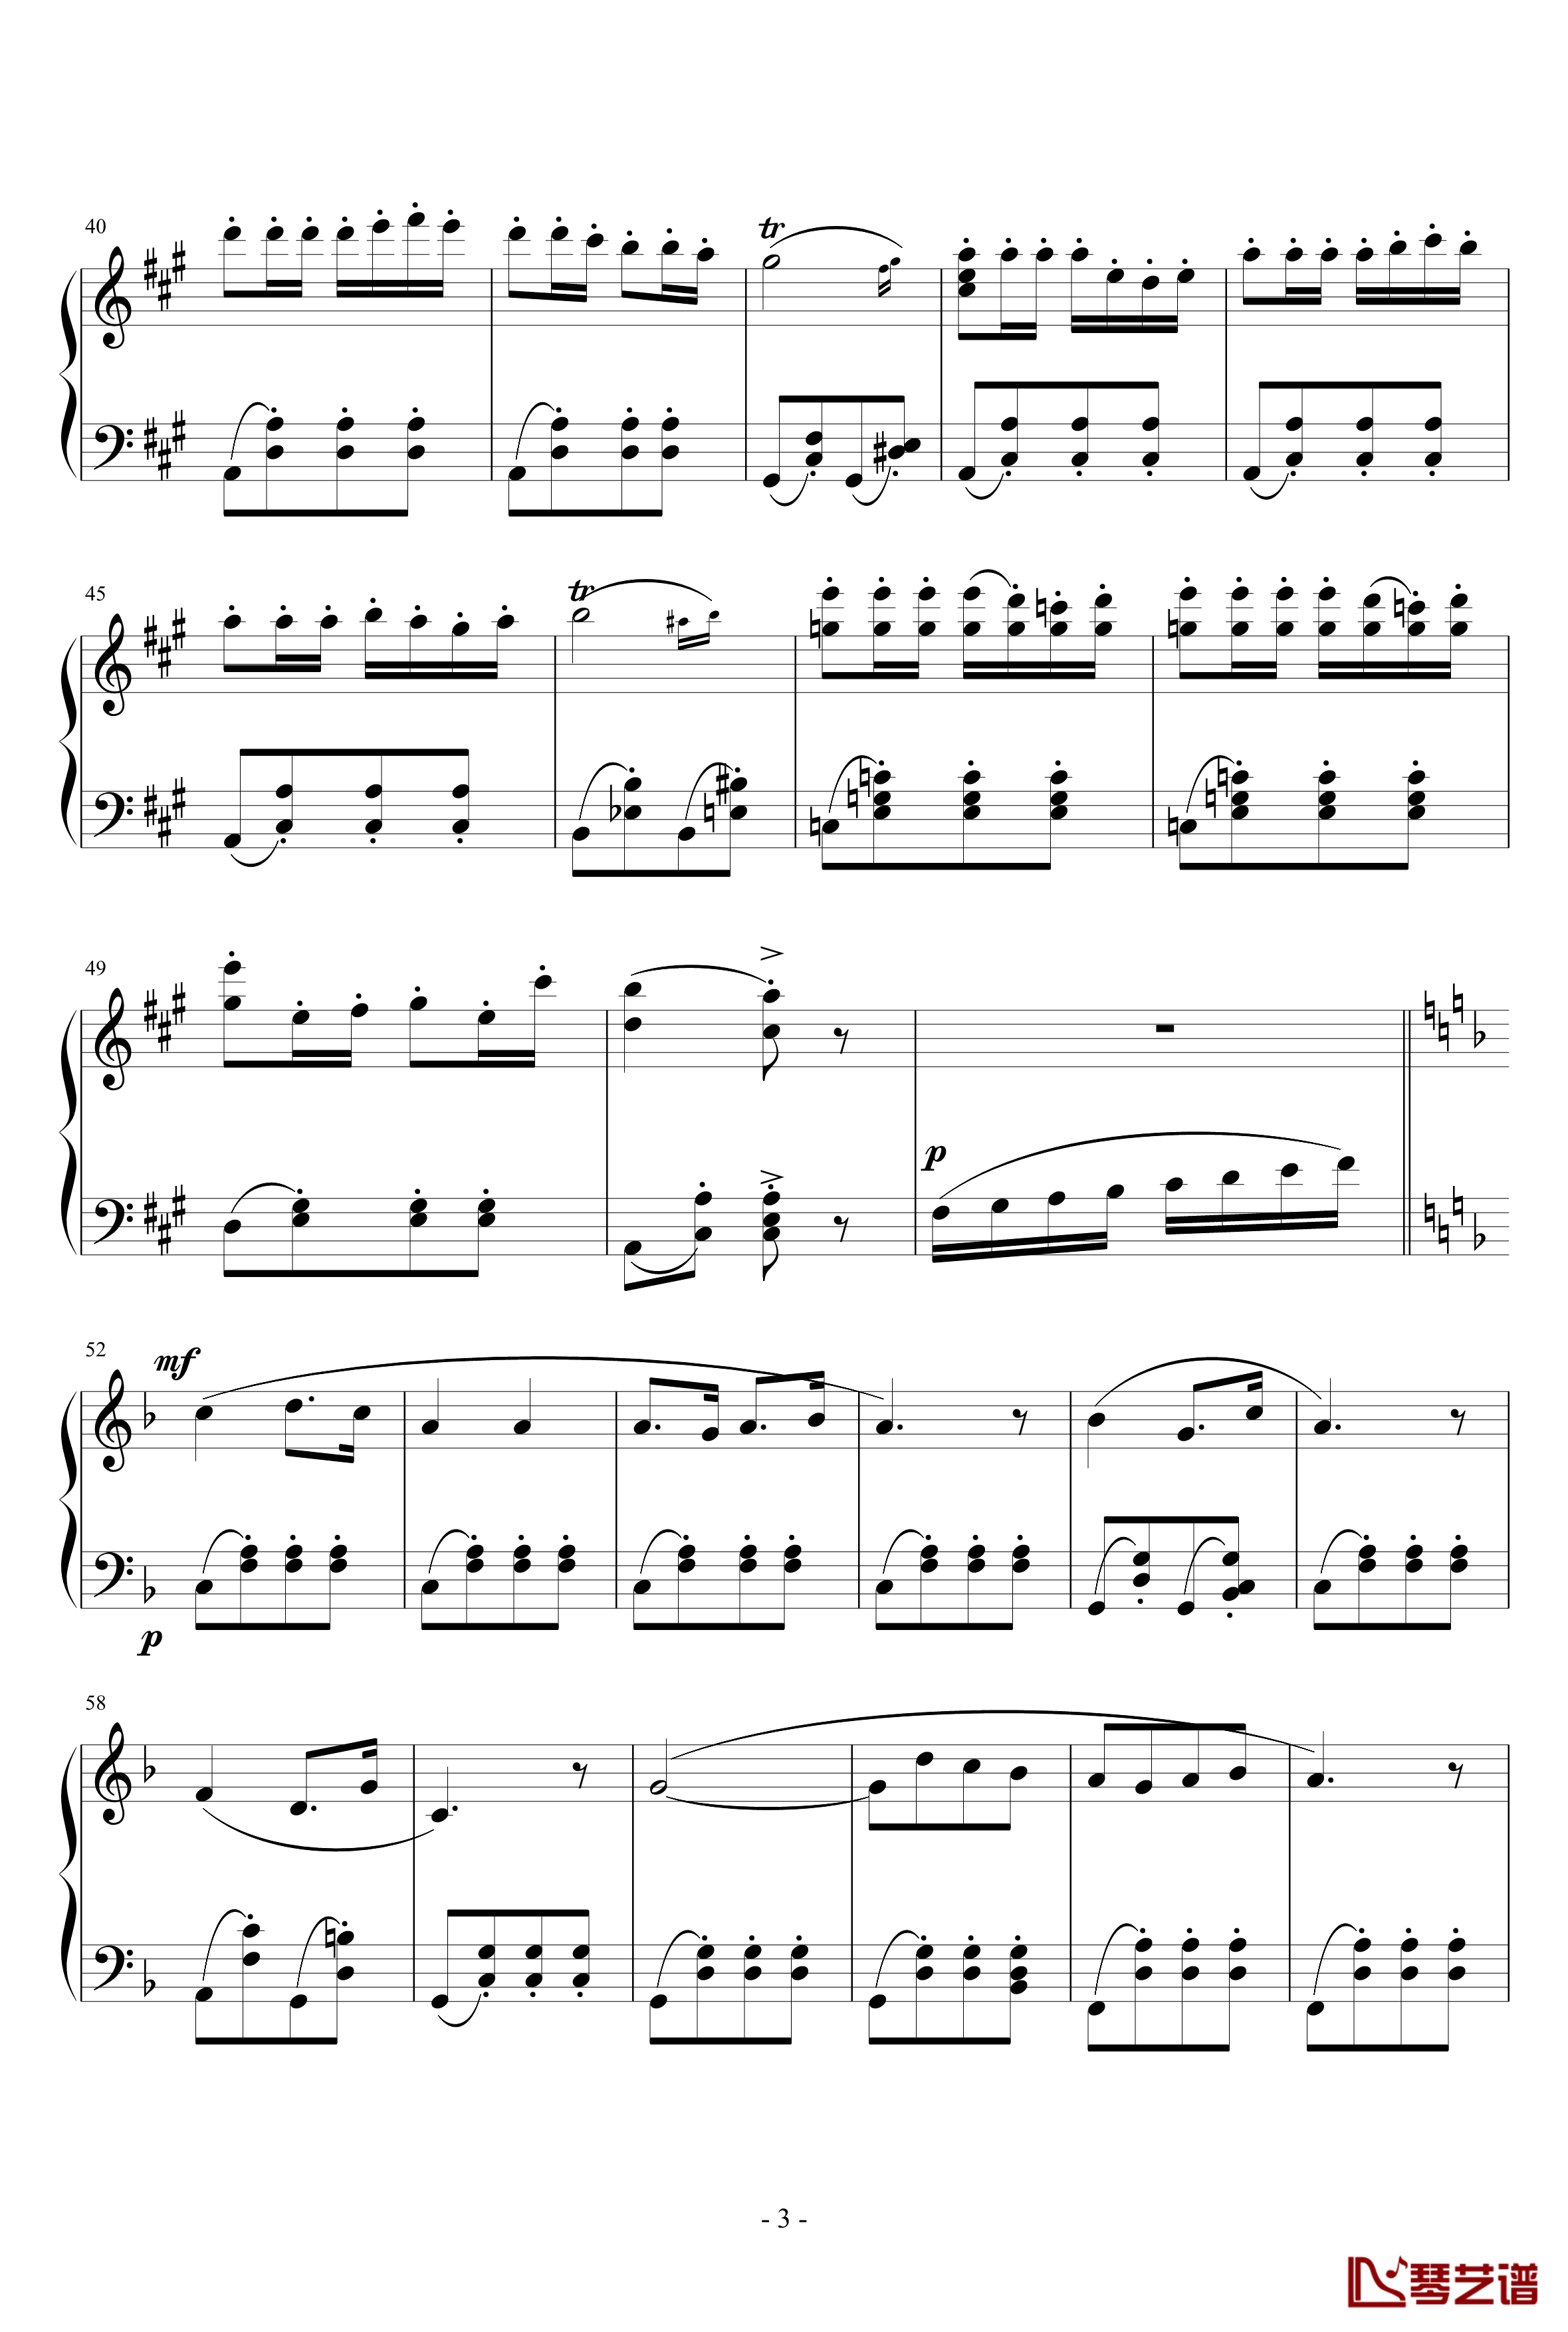 卡门序曲钢琴谱-完整版-比才-Bizet3